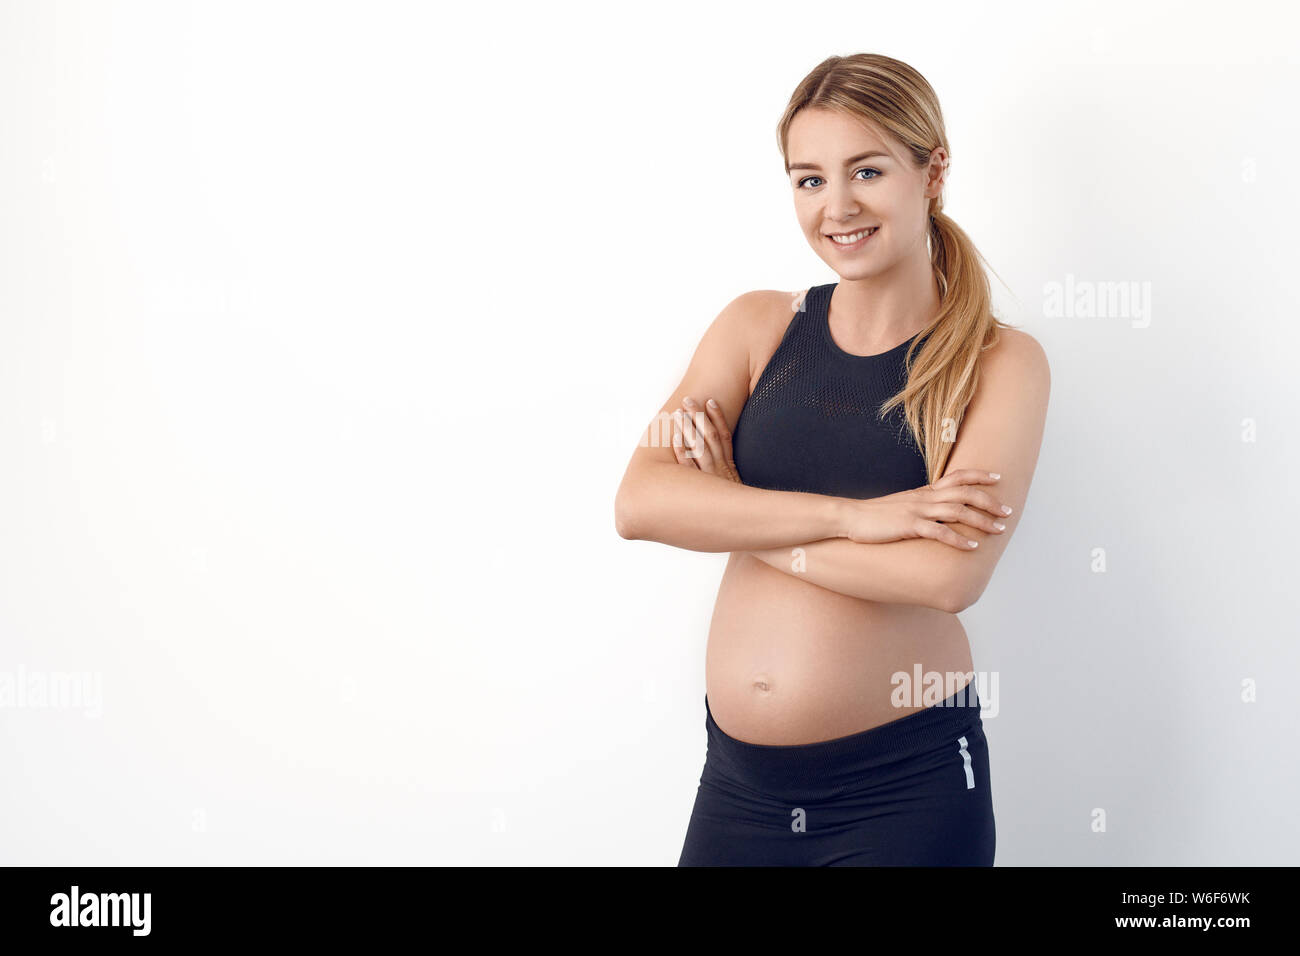 Glücklichen gesunden jungen schwangeren Frau in Schwarz Sportbekleidung auf den Hüften in die Kamera schaut mit einem strahlenden Lächeln Stockfoto